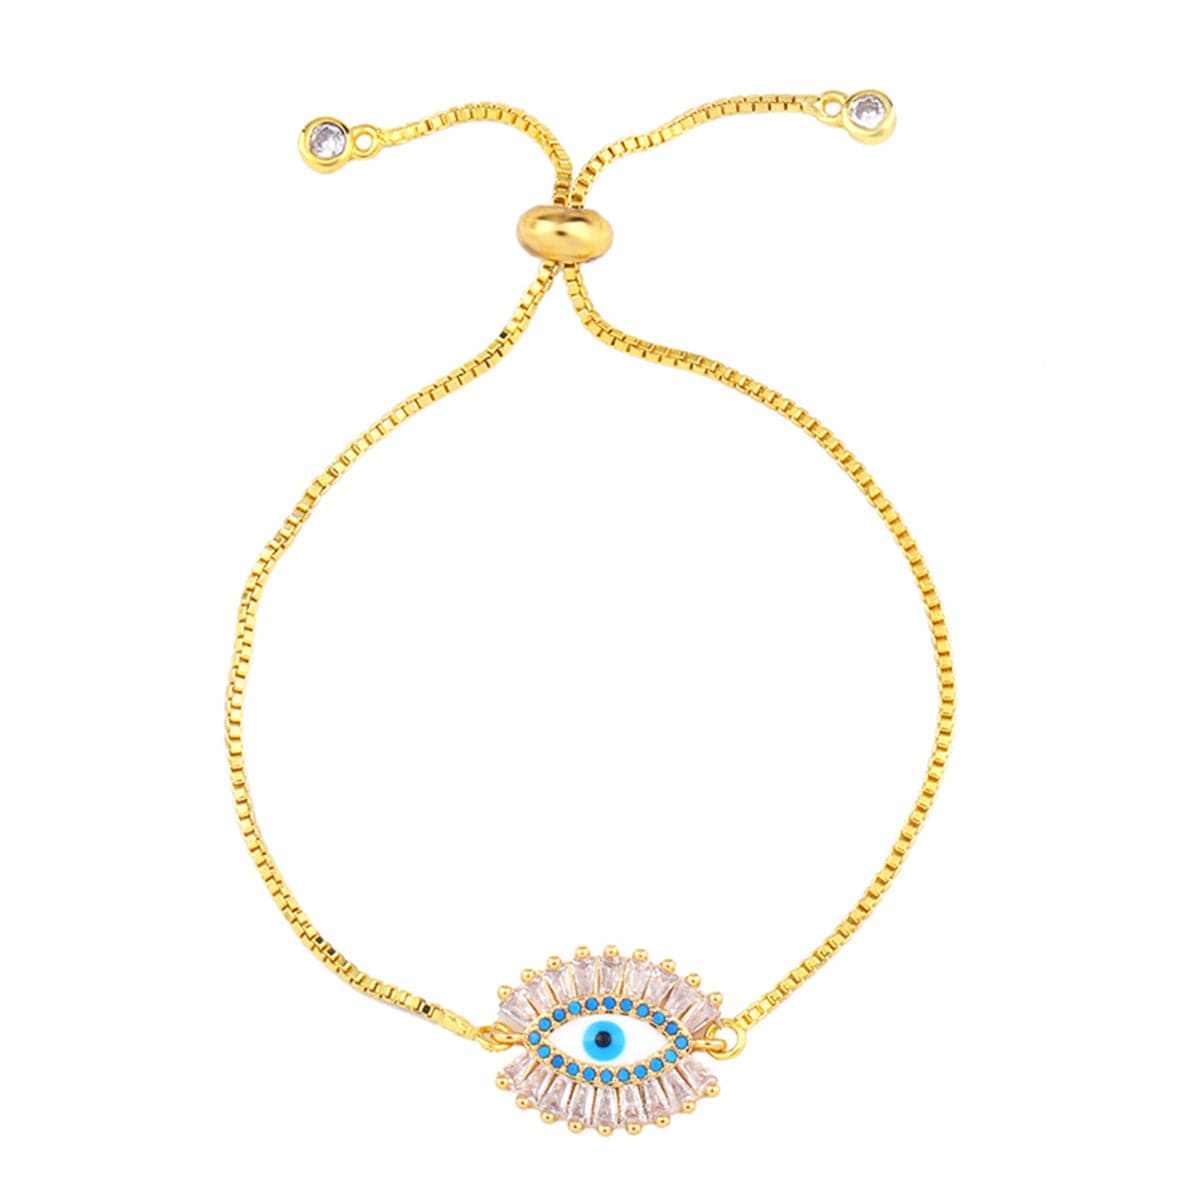 Teal Cubic Zirconia & 18K Gold-Plated Evil Eye Adjustable Bracelet